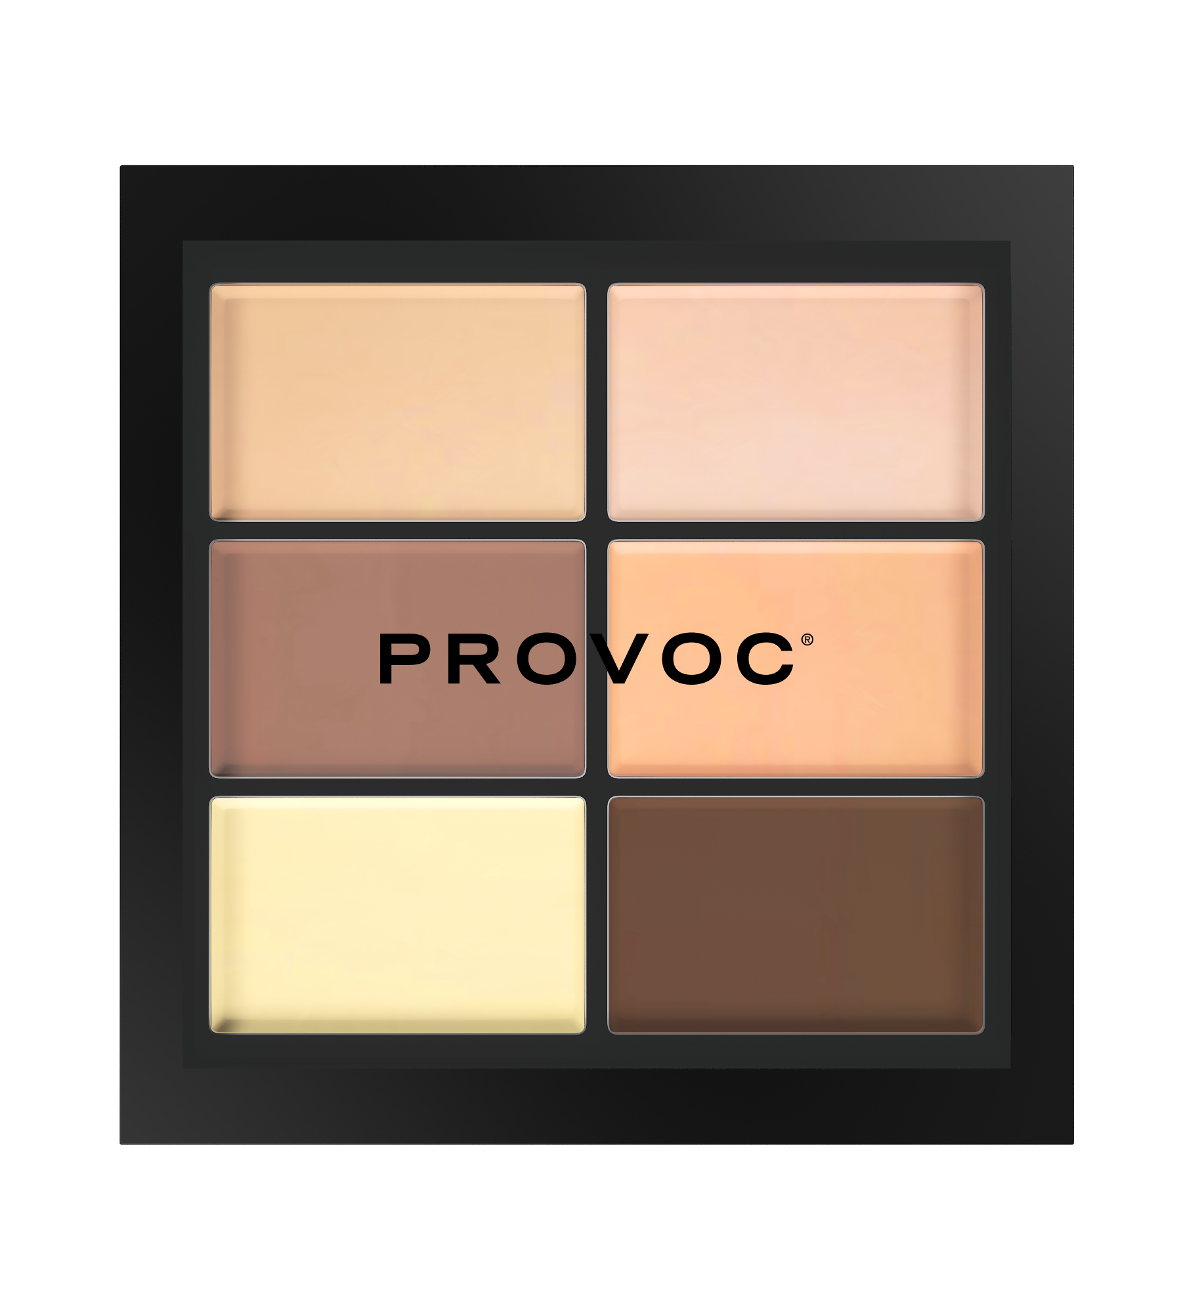 PROVOC Палетка для коррекции лица, кремовая текстура / Medium Light CONCEAL Correct Contour CCC4